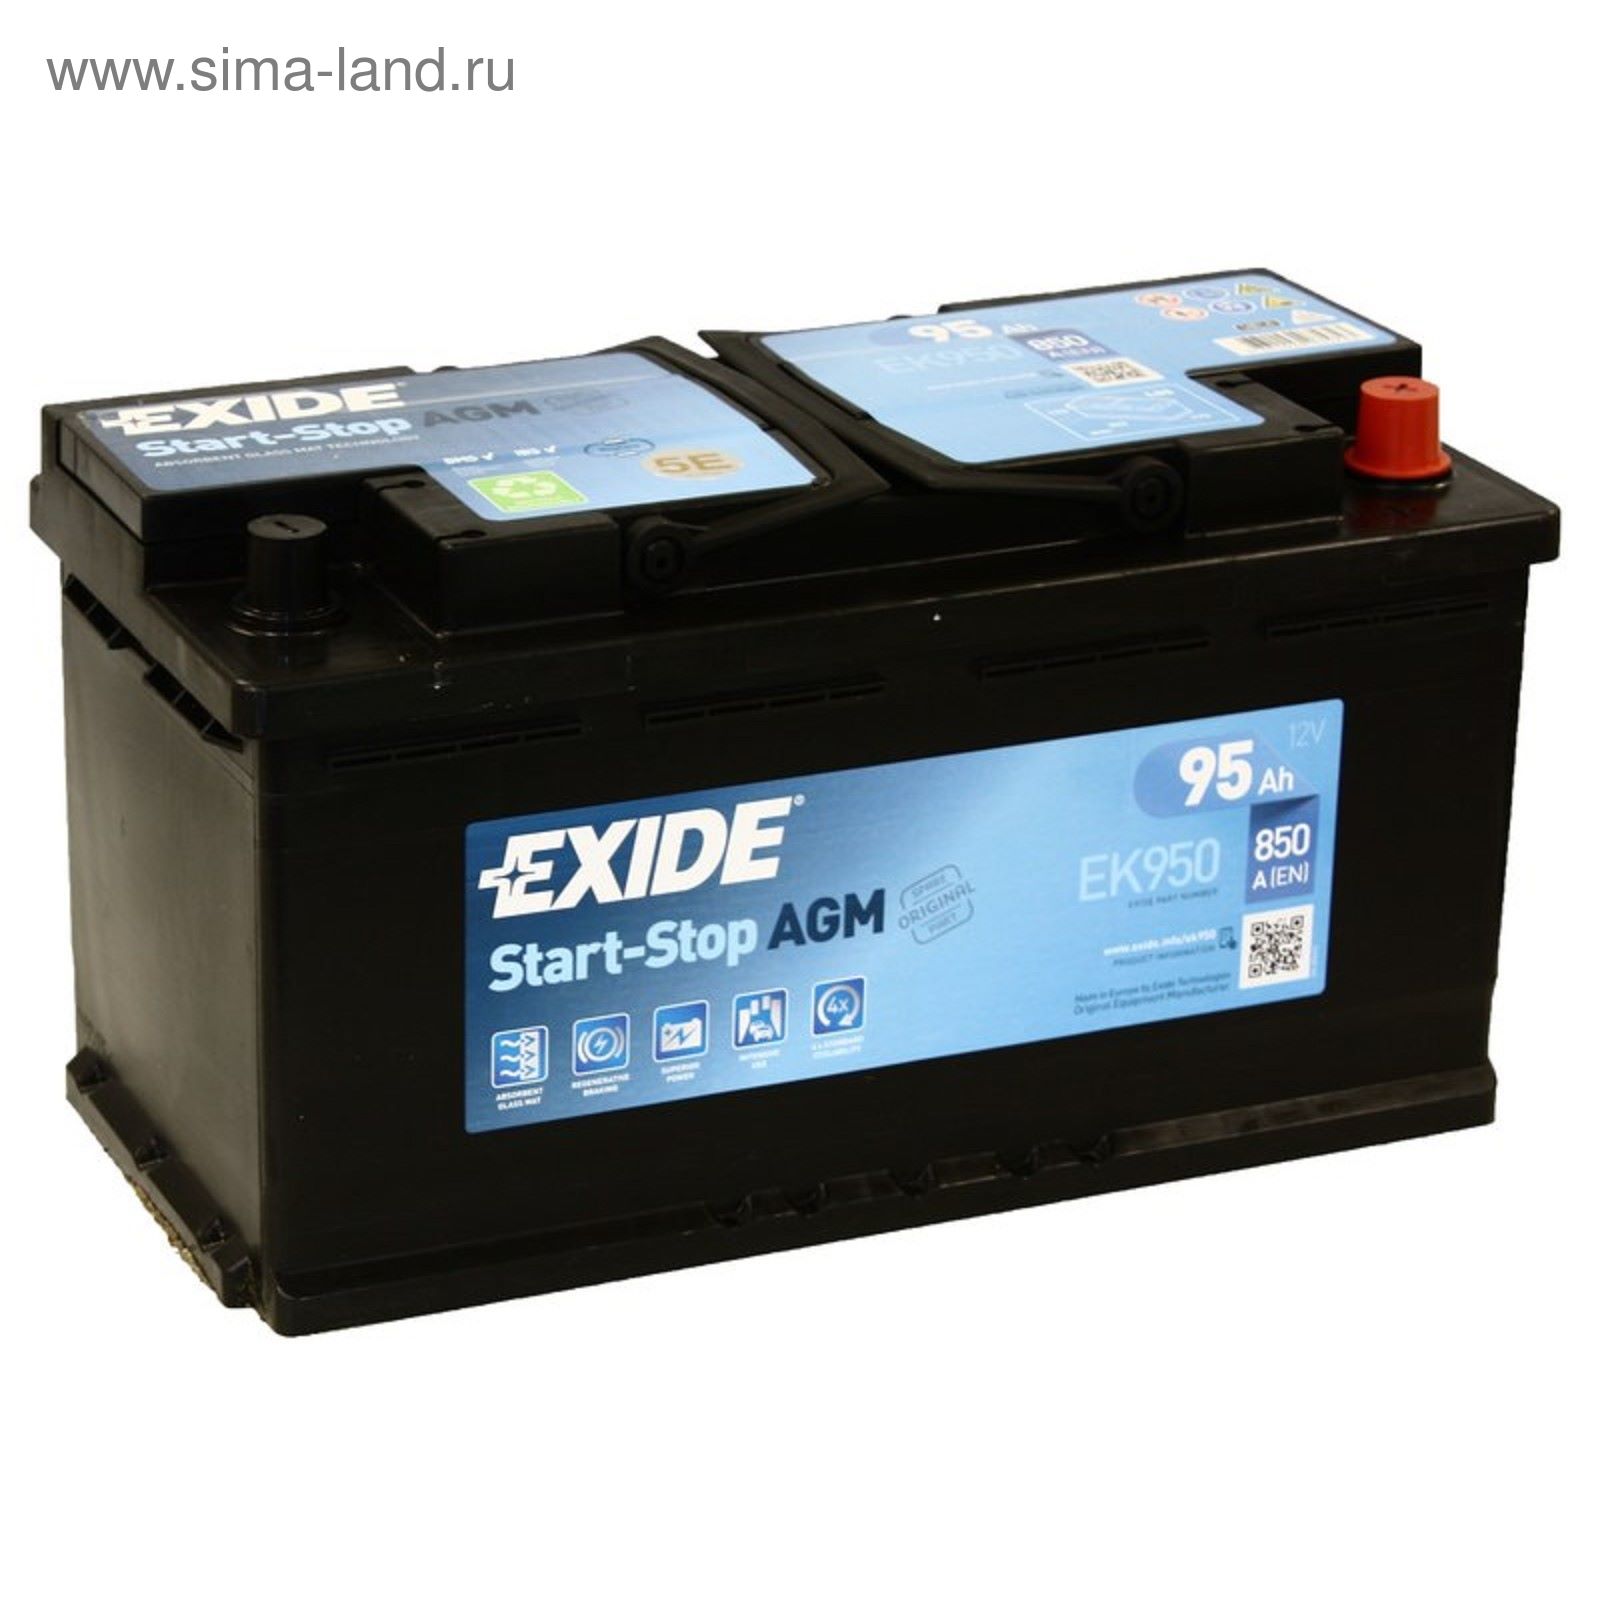 Аккумулятор автомобильный 95 ач. Аккумулятор Exide start-stop AGM ek800. Ek950 Exide. Аккумулятор Exide AGM 95. Аккумулятор Exide ek800 AGM.